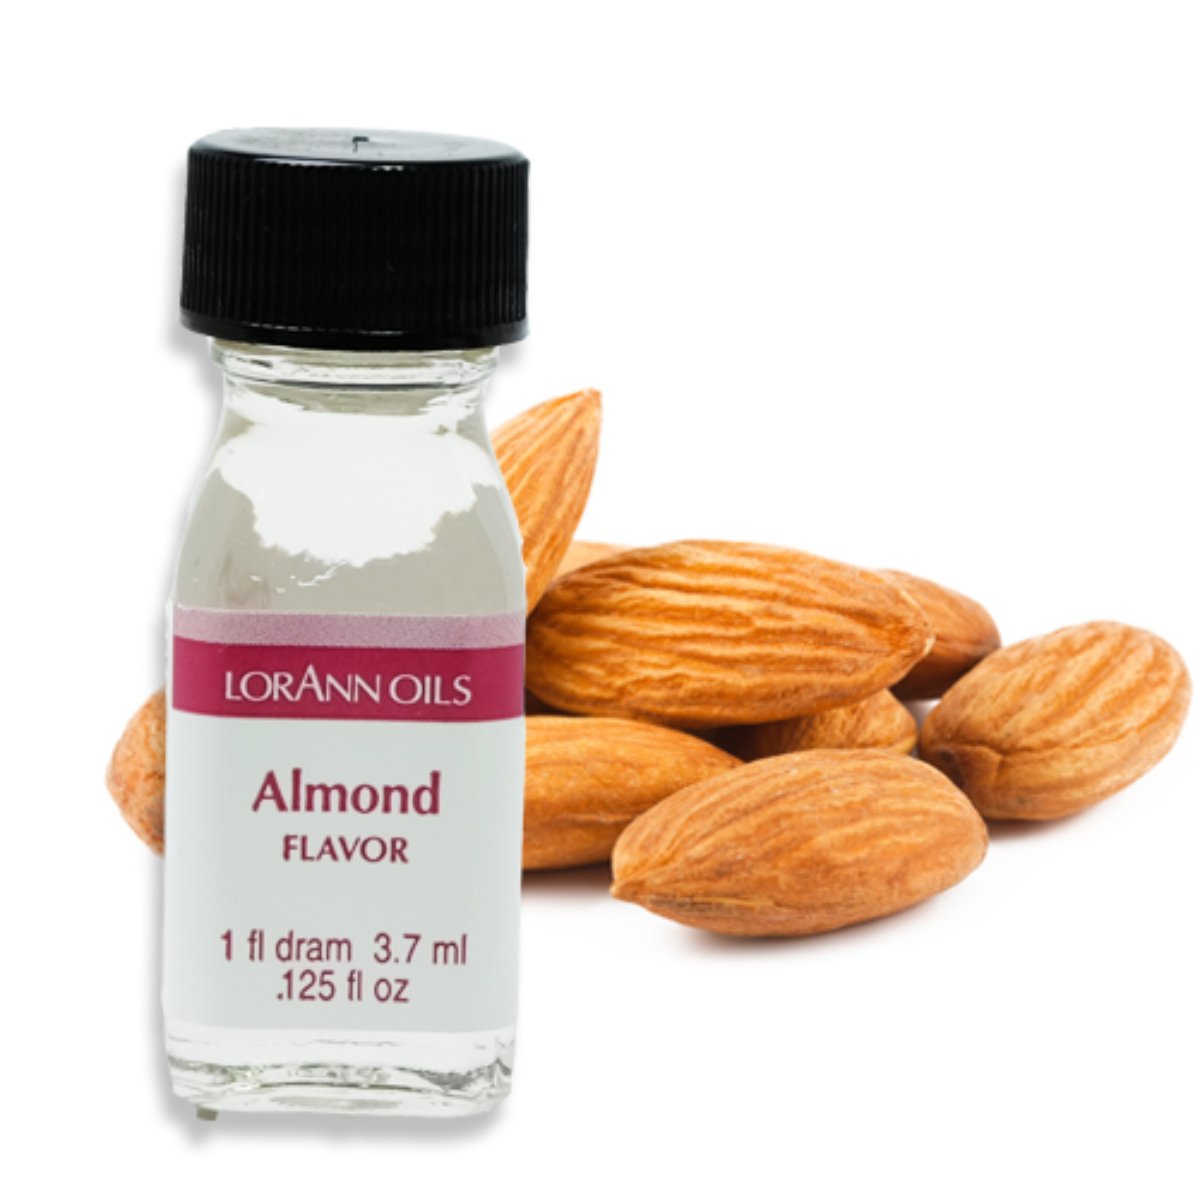 Almond Flavor 1 Dram - Bake Supply Plus